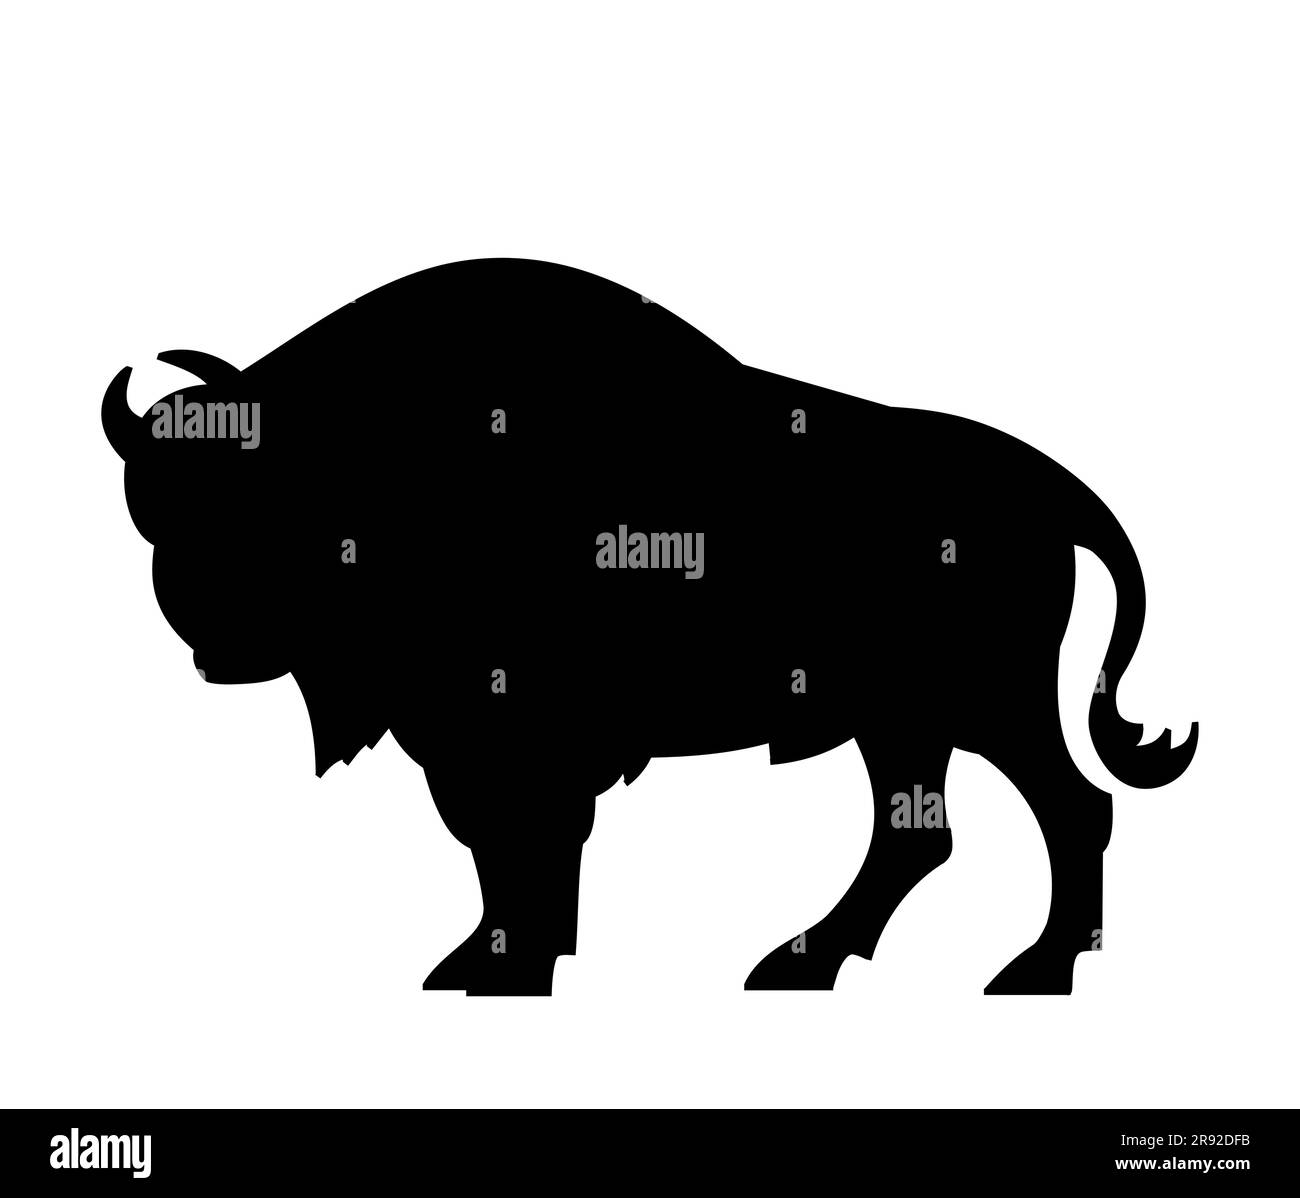 Silhouette noire d'un bison européen Bison bonasus, buffle sauvage, animaux sauvages d'Europe, vecteur isolé sur fond blanc Illustration de Vecteur